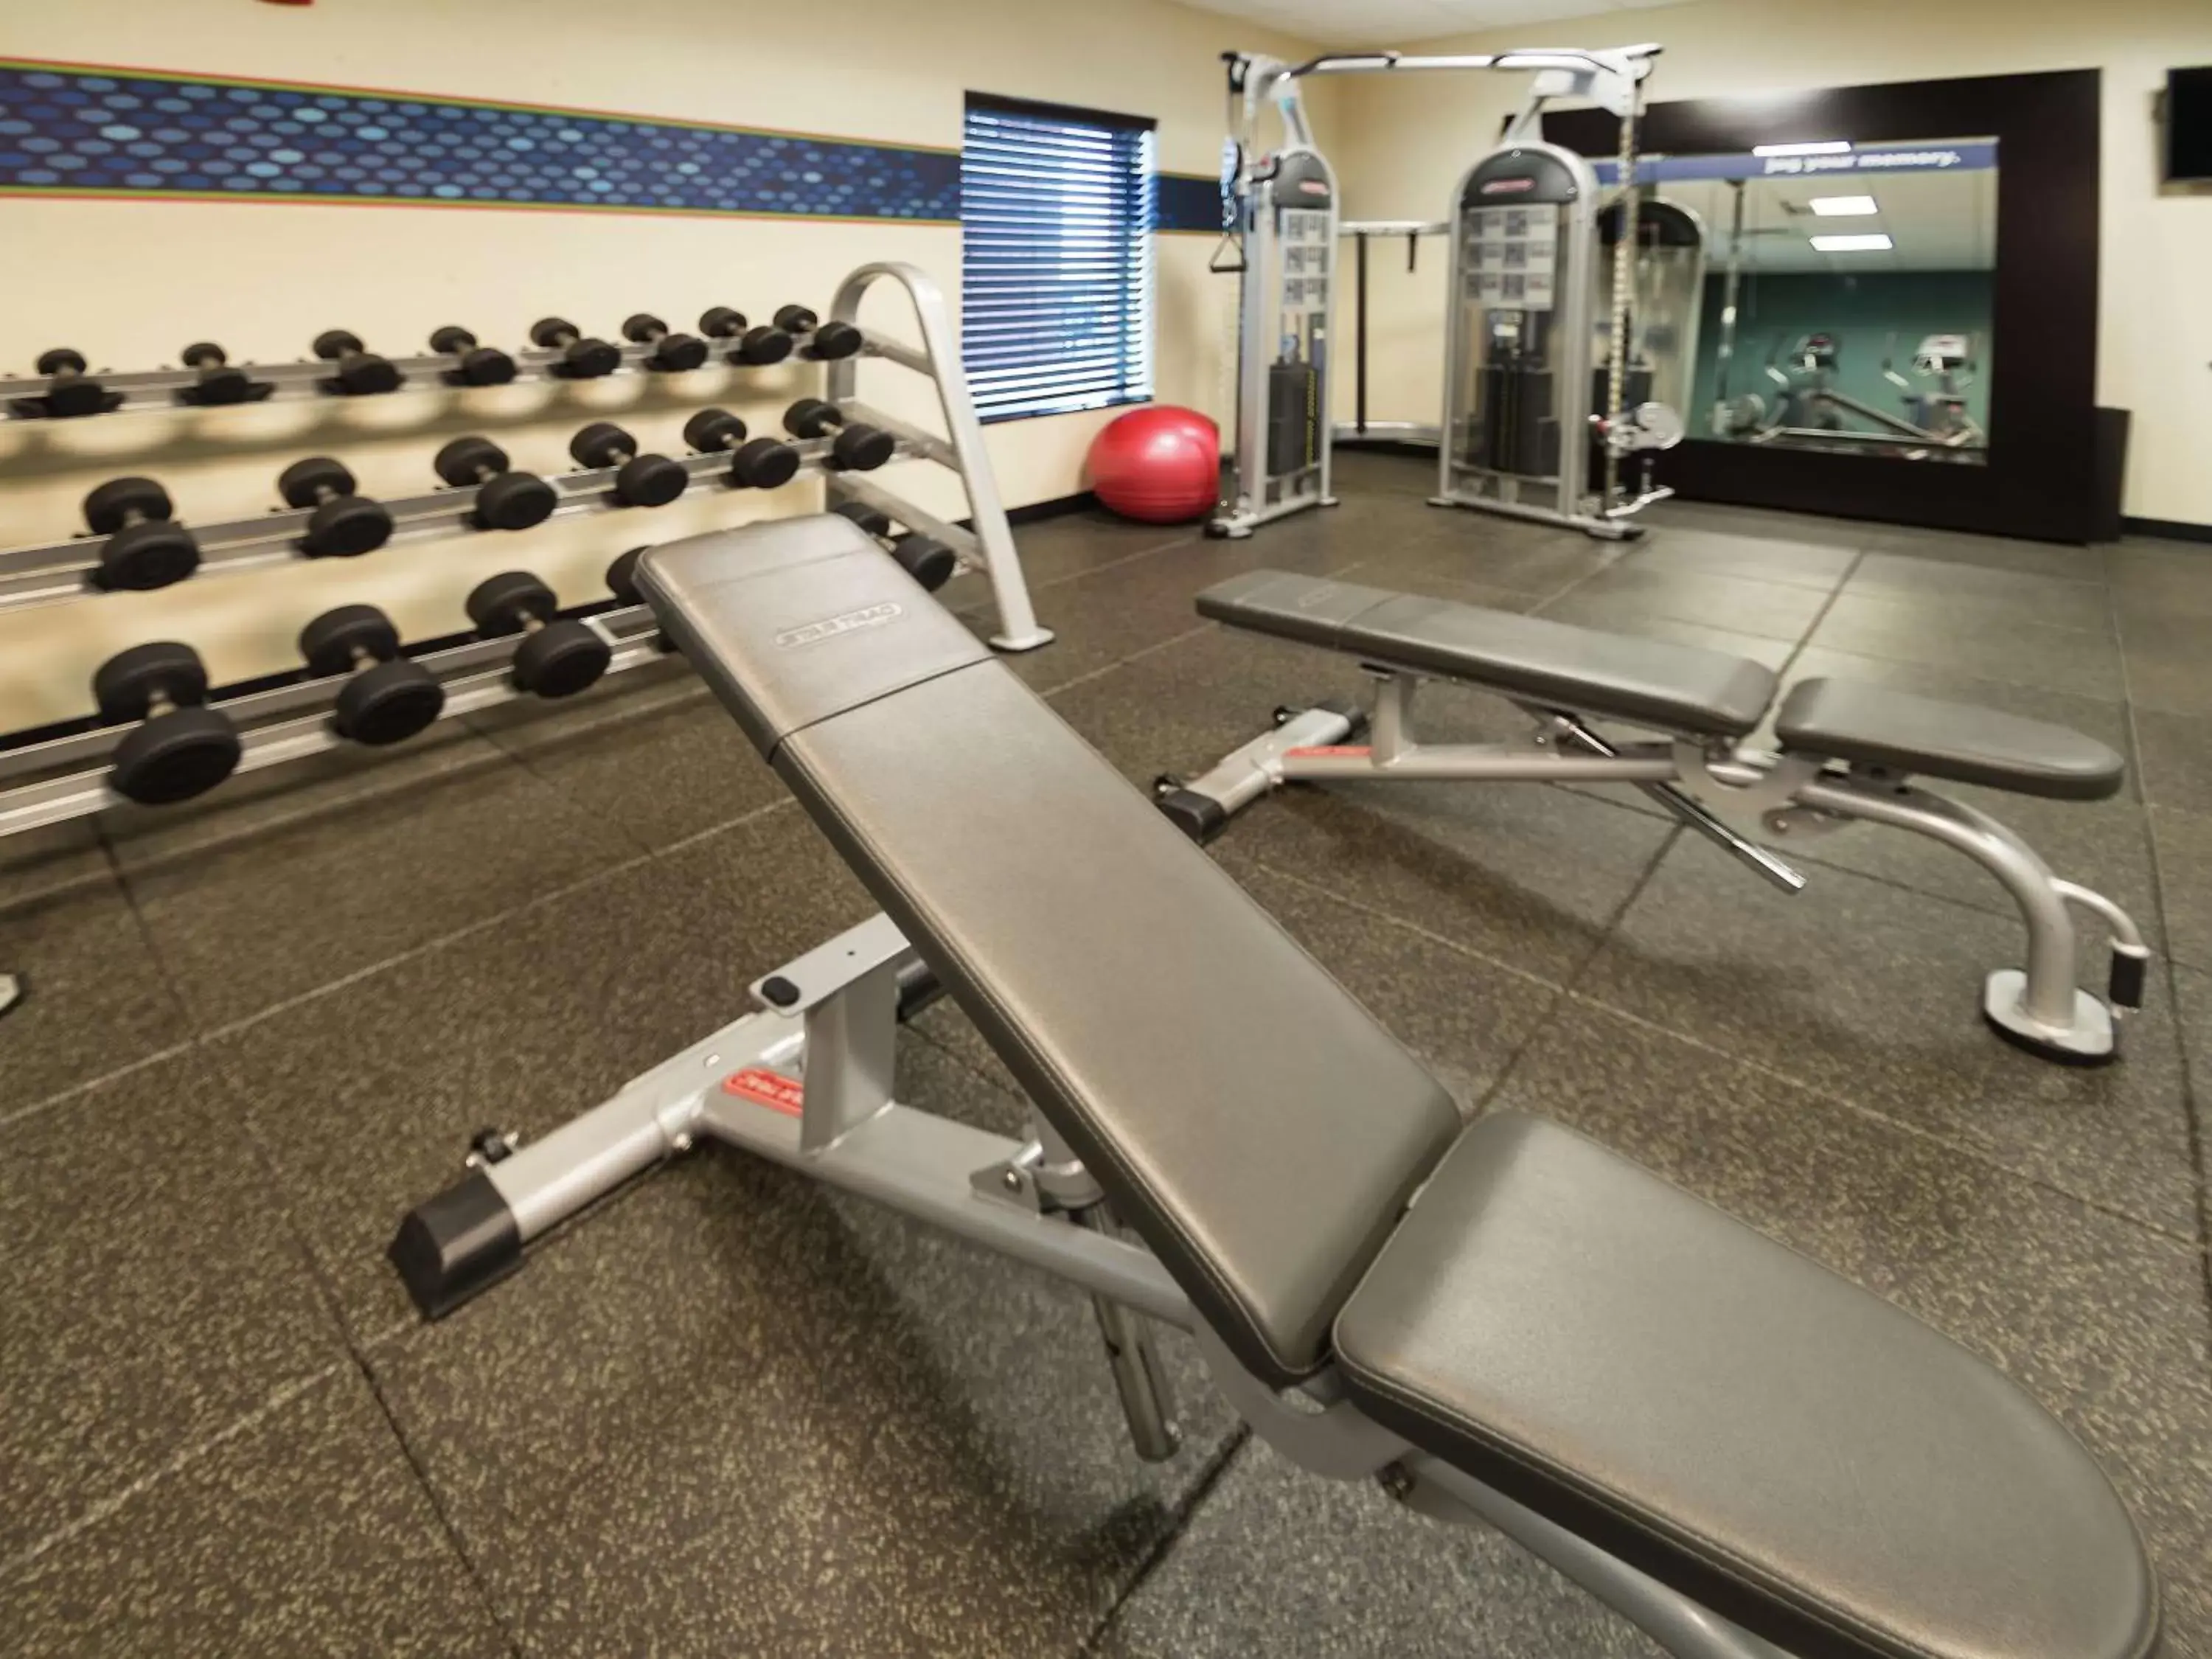 Fitness centre/facilities, Fitness Center/Facilities in Hampton Inn Hernando, MS